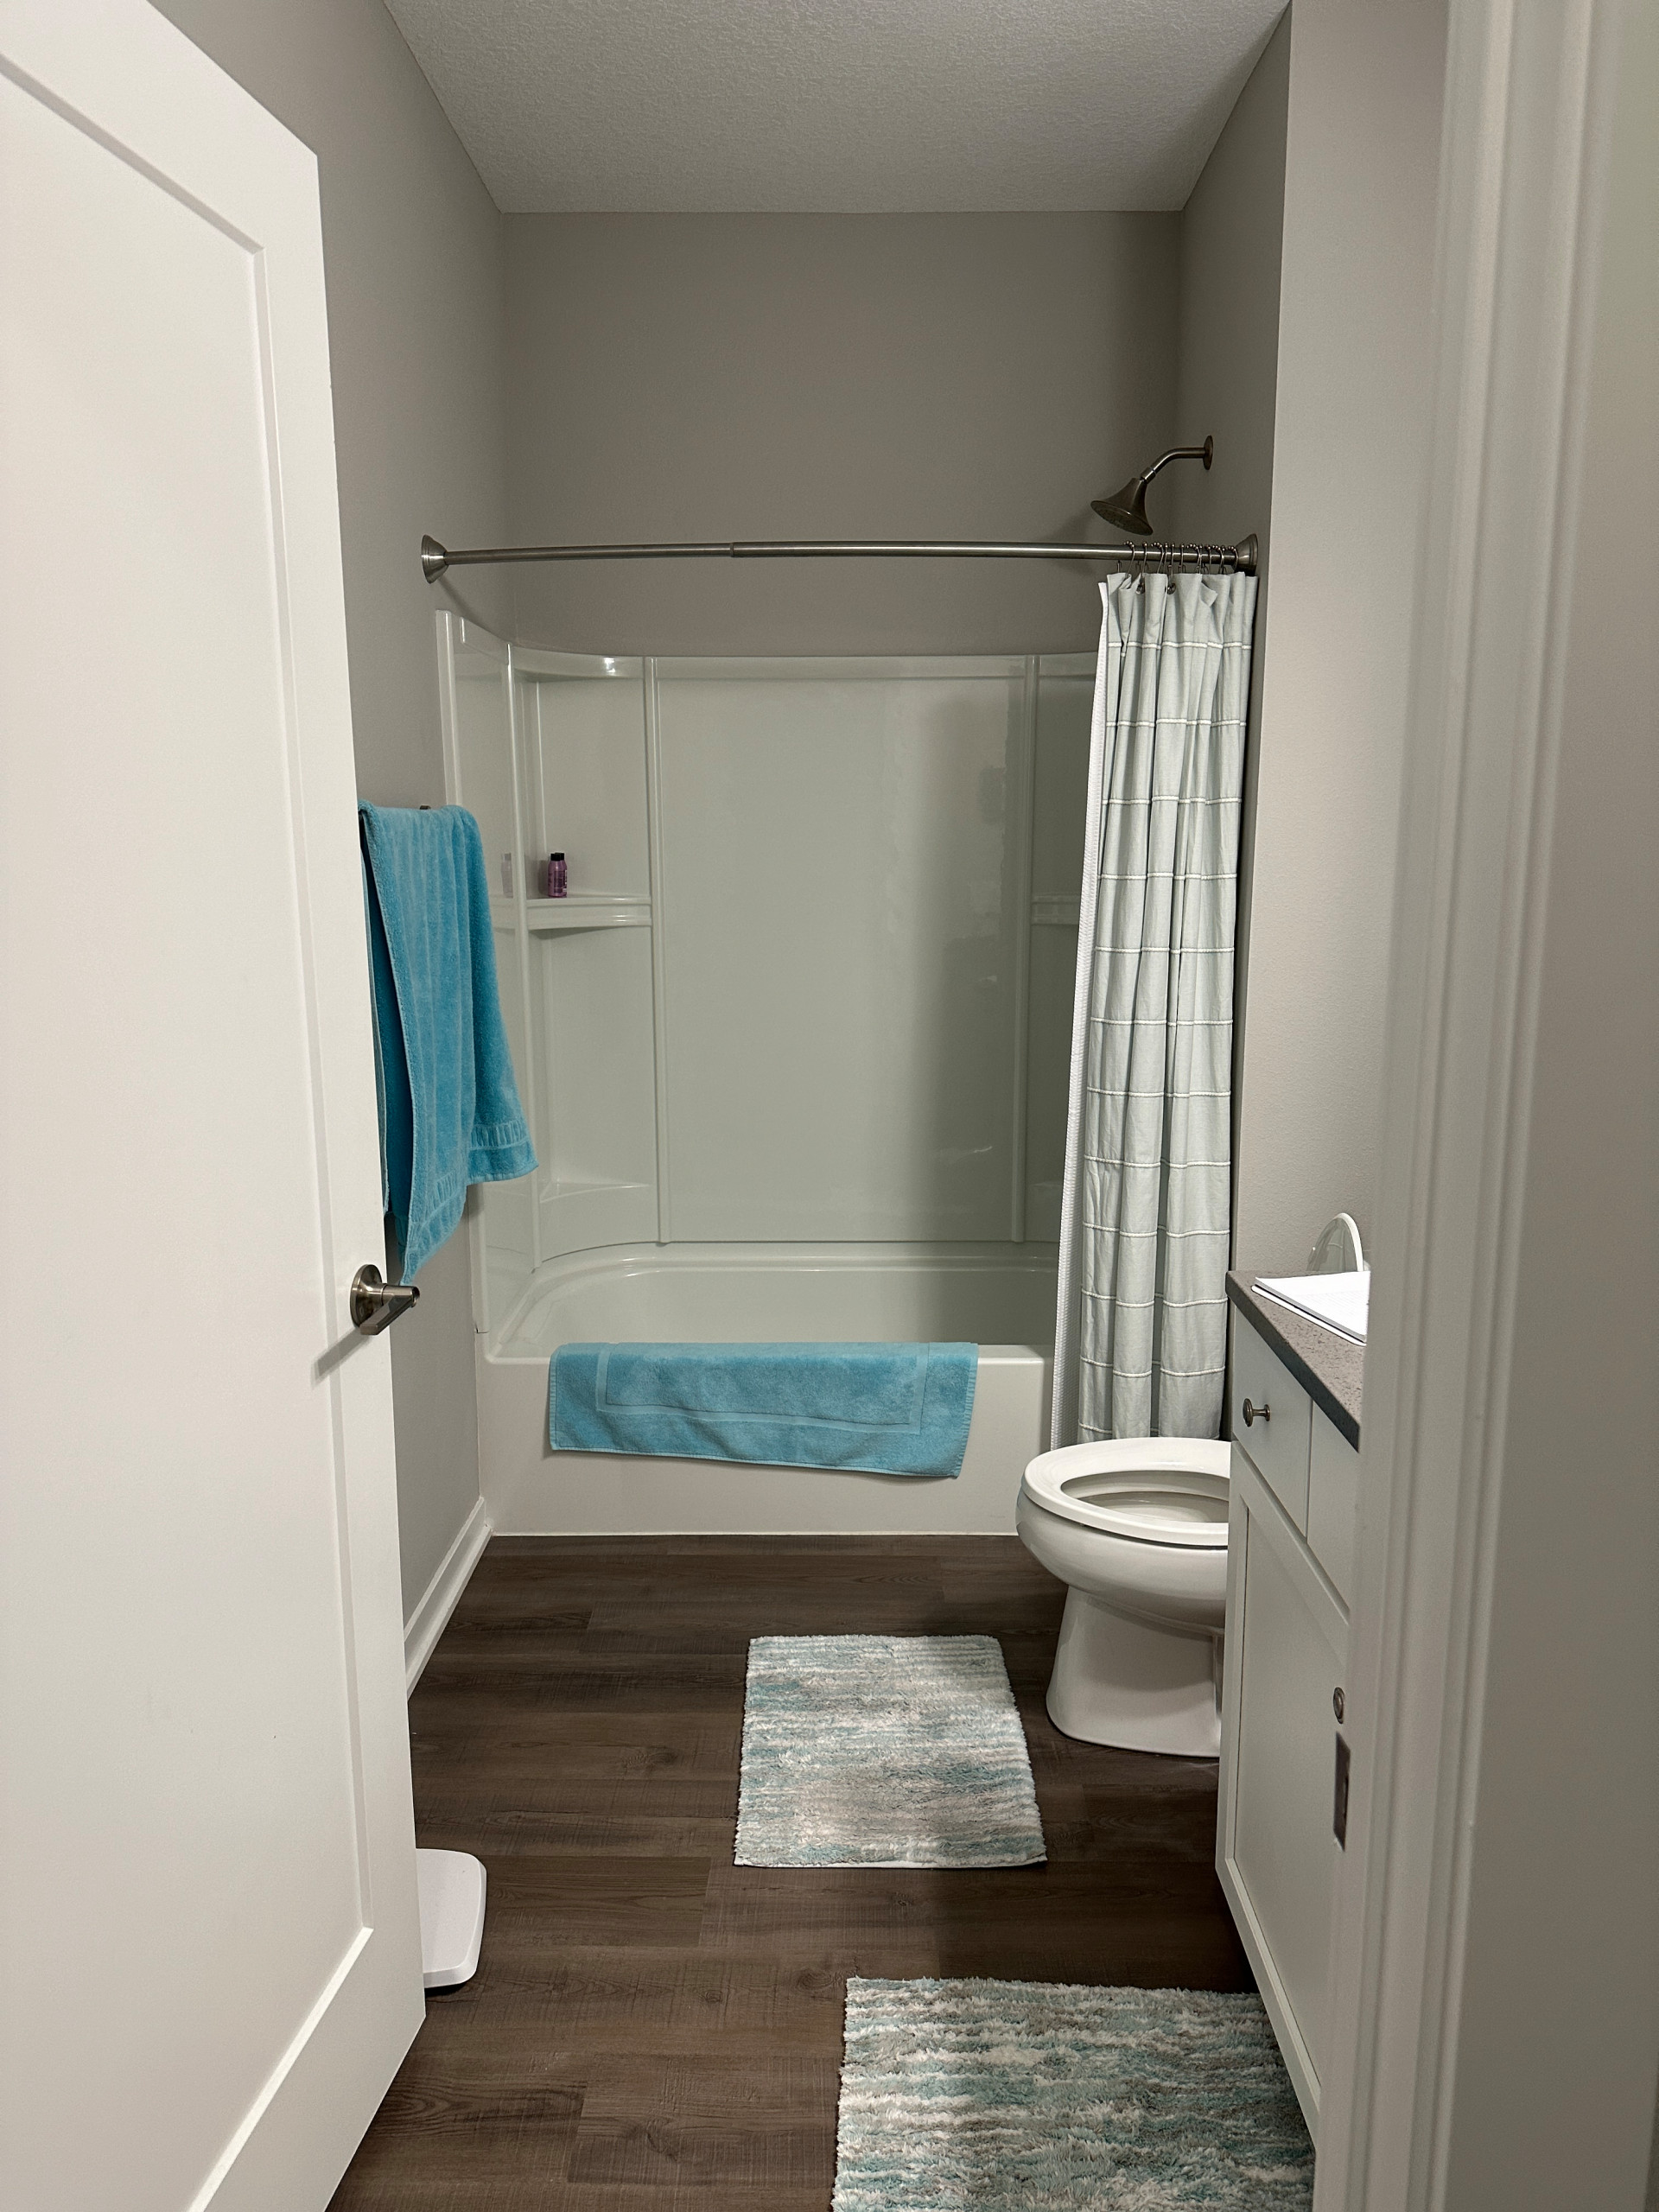 West DSM Bathroom Remodel